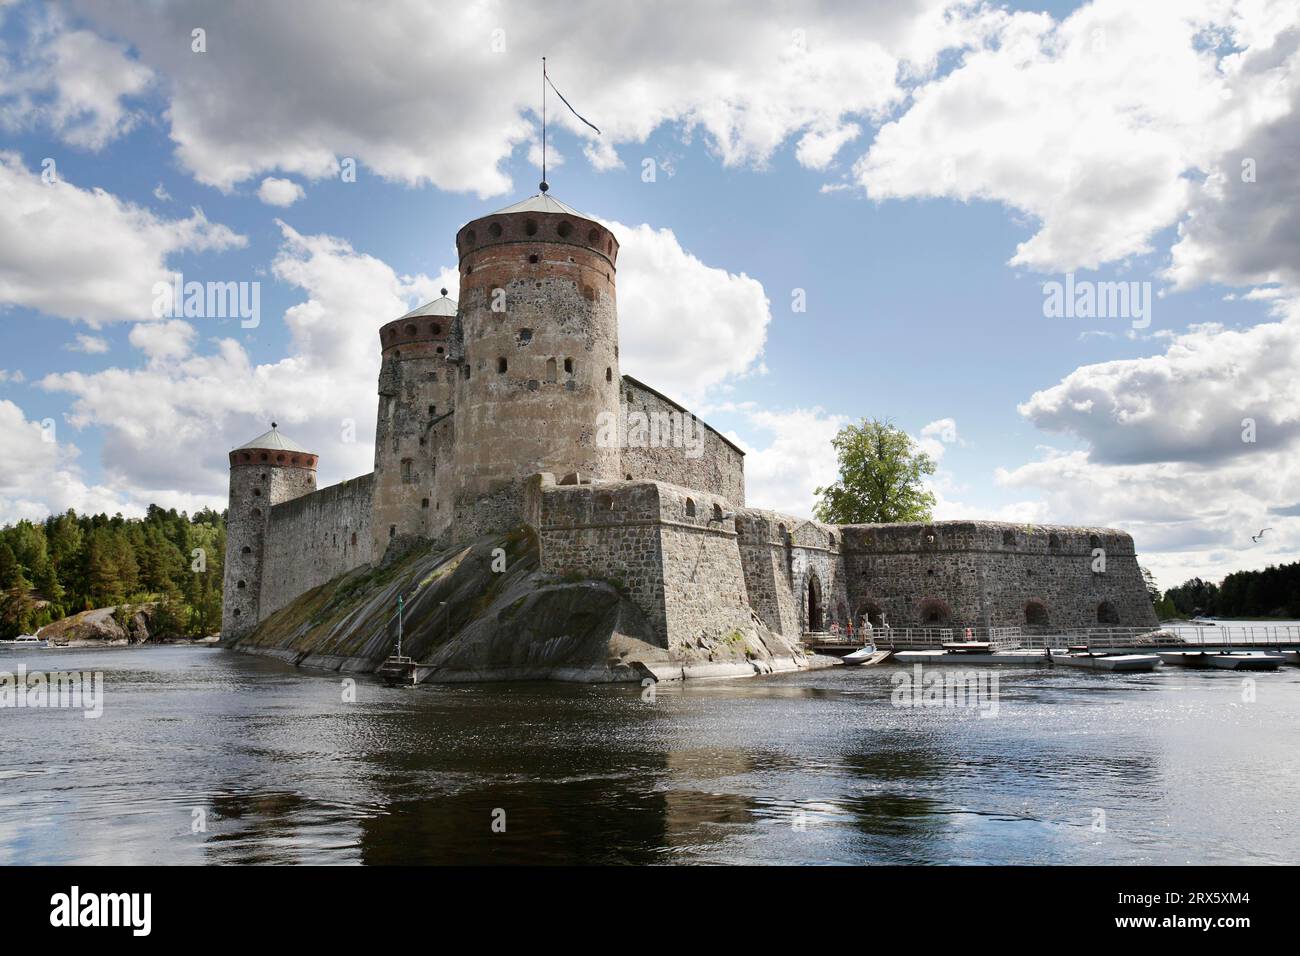 Il castello medievale di Olavinlinna nella Finlandia orientale nella città di Savonlinna il castello di Olavinlinna fu fondato nel 1475 per garantire il confine orientale del Foto Stock